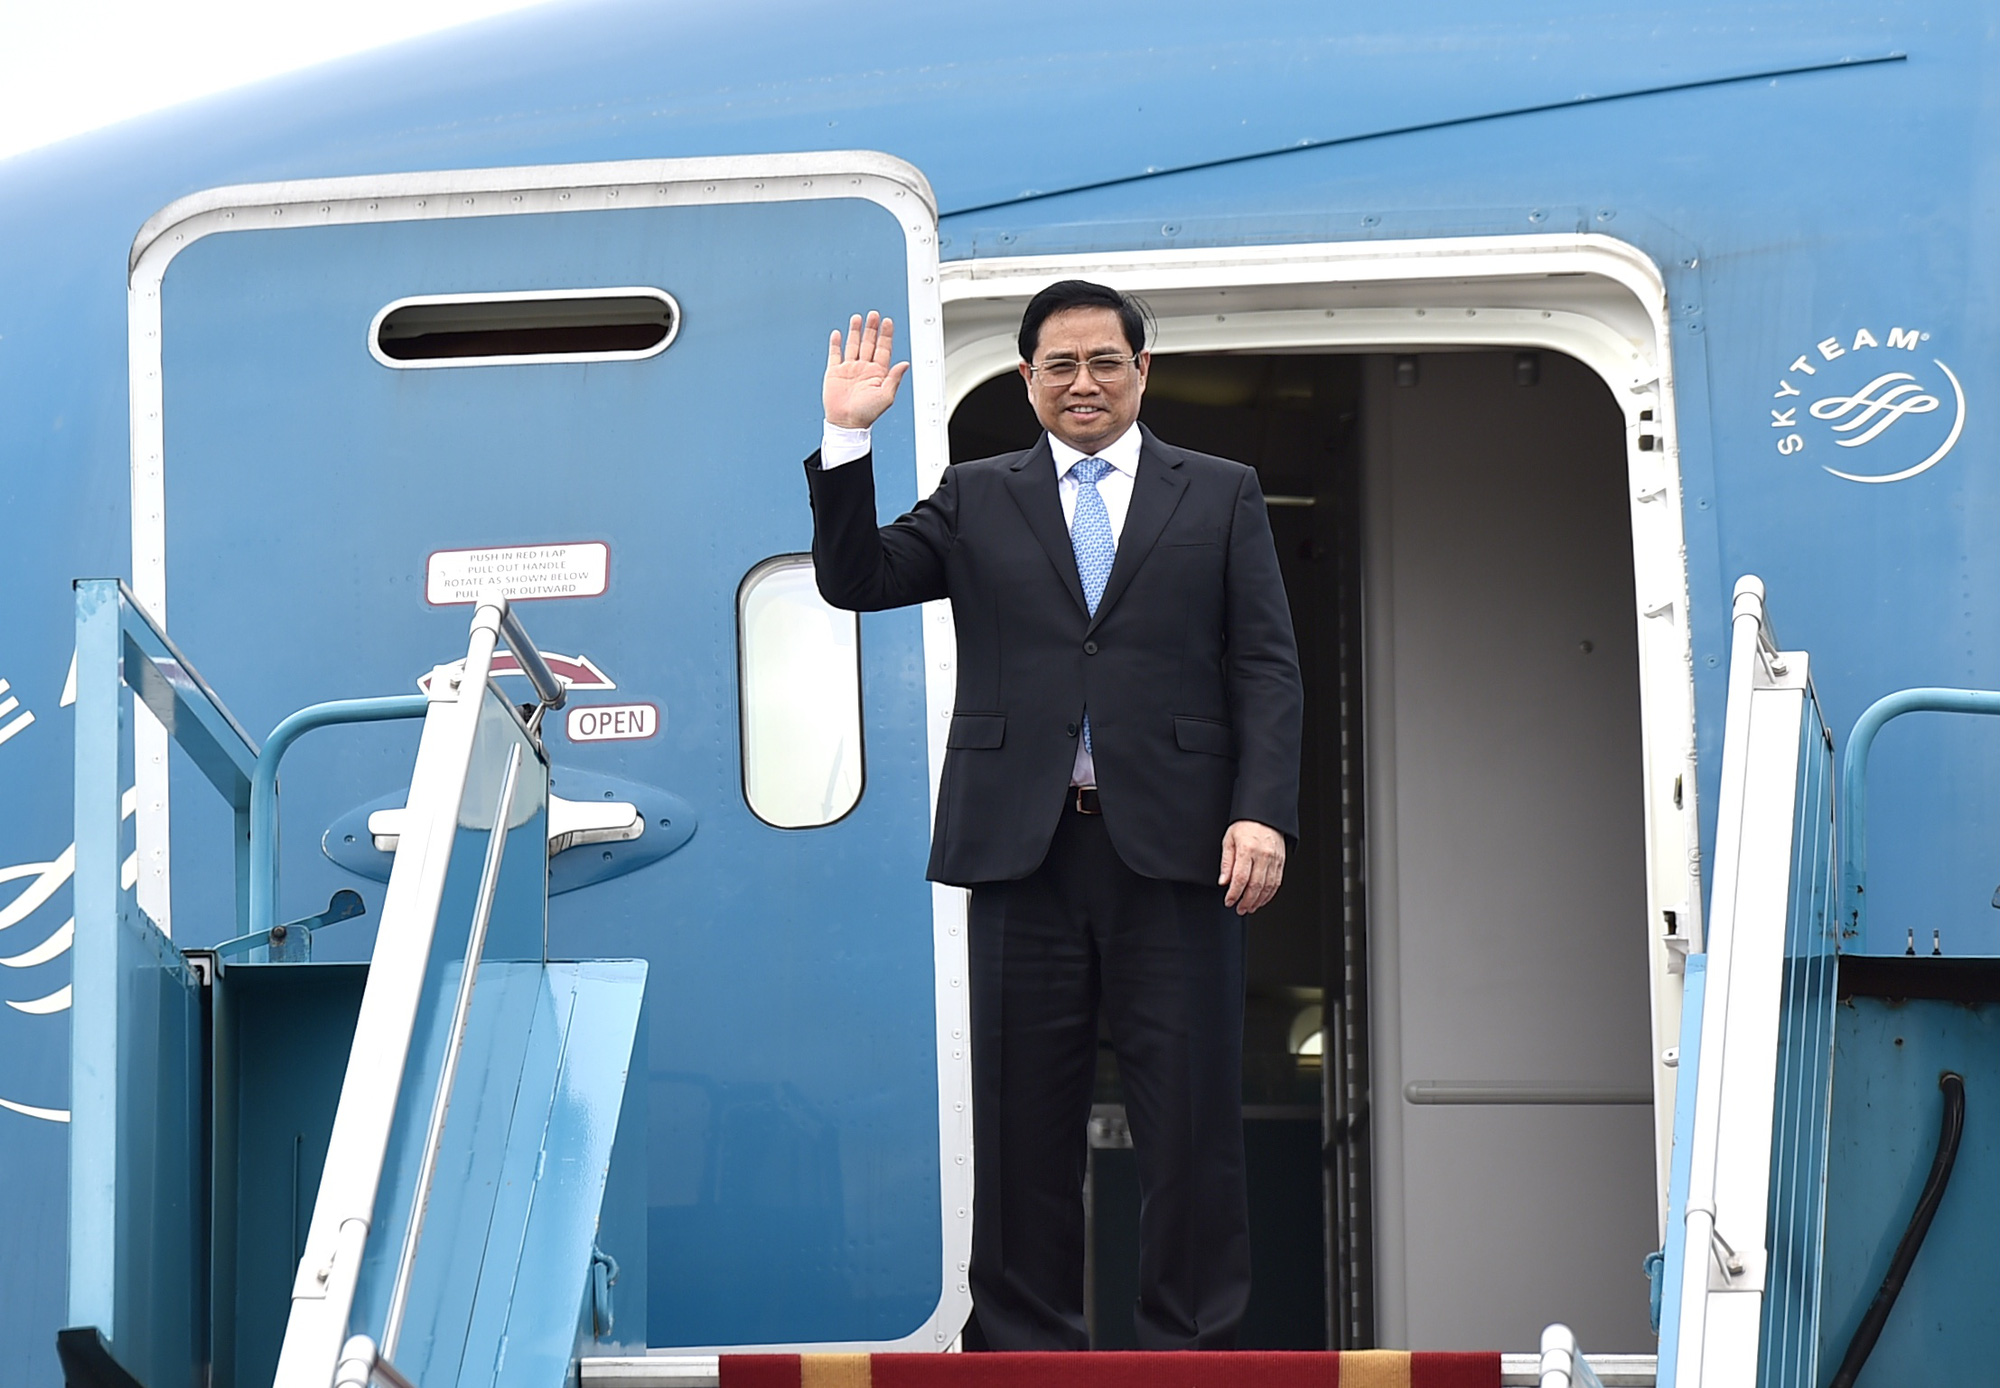 Thủ tướng thăm chính thức Nhật Bản: Quan hệ hai nước đang ở giai đoạn tốt đẹp nhất - Ảnh 1.